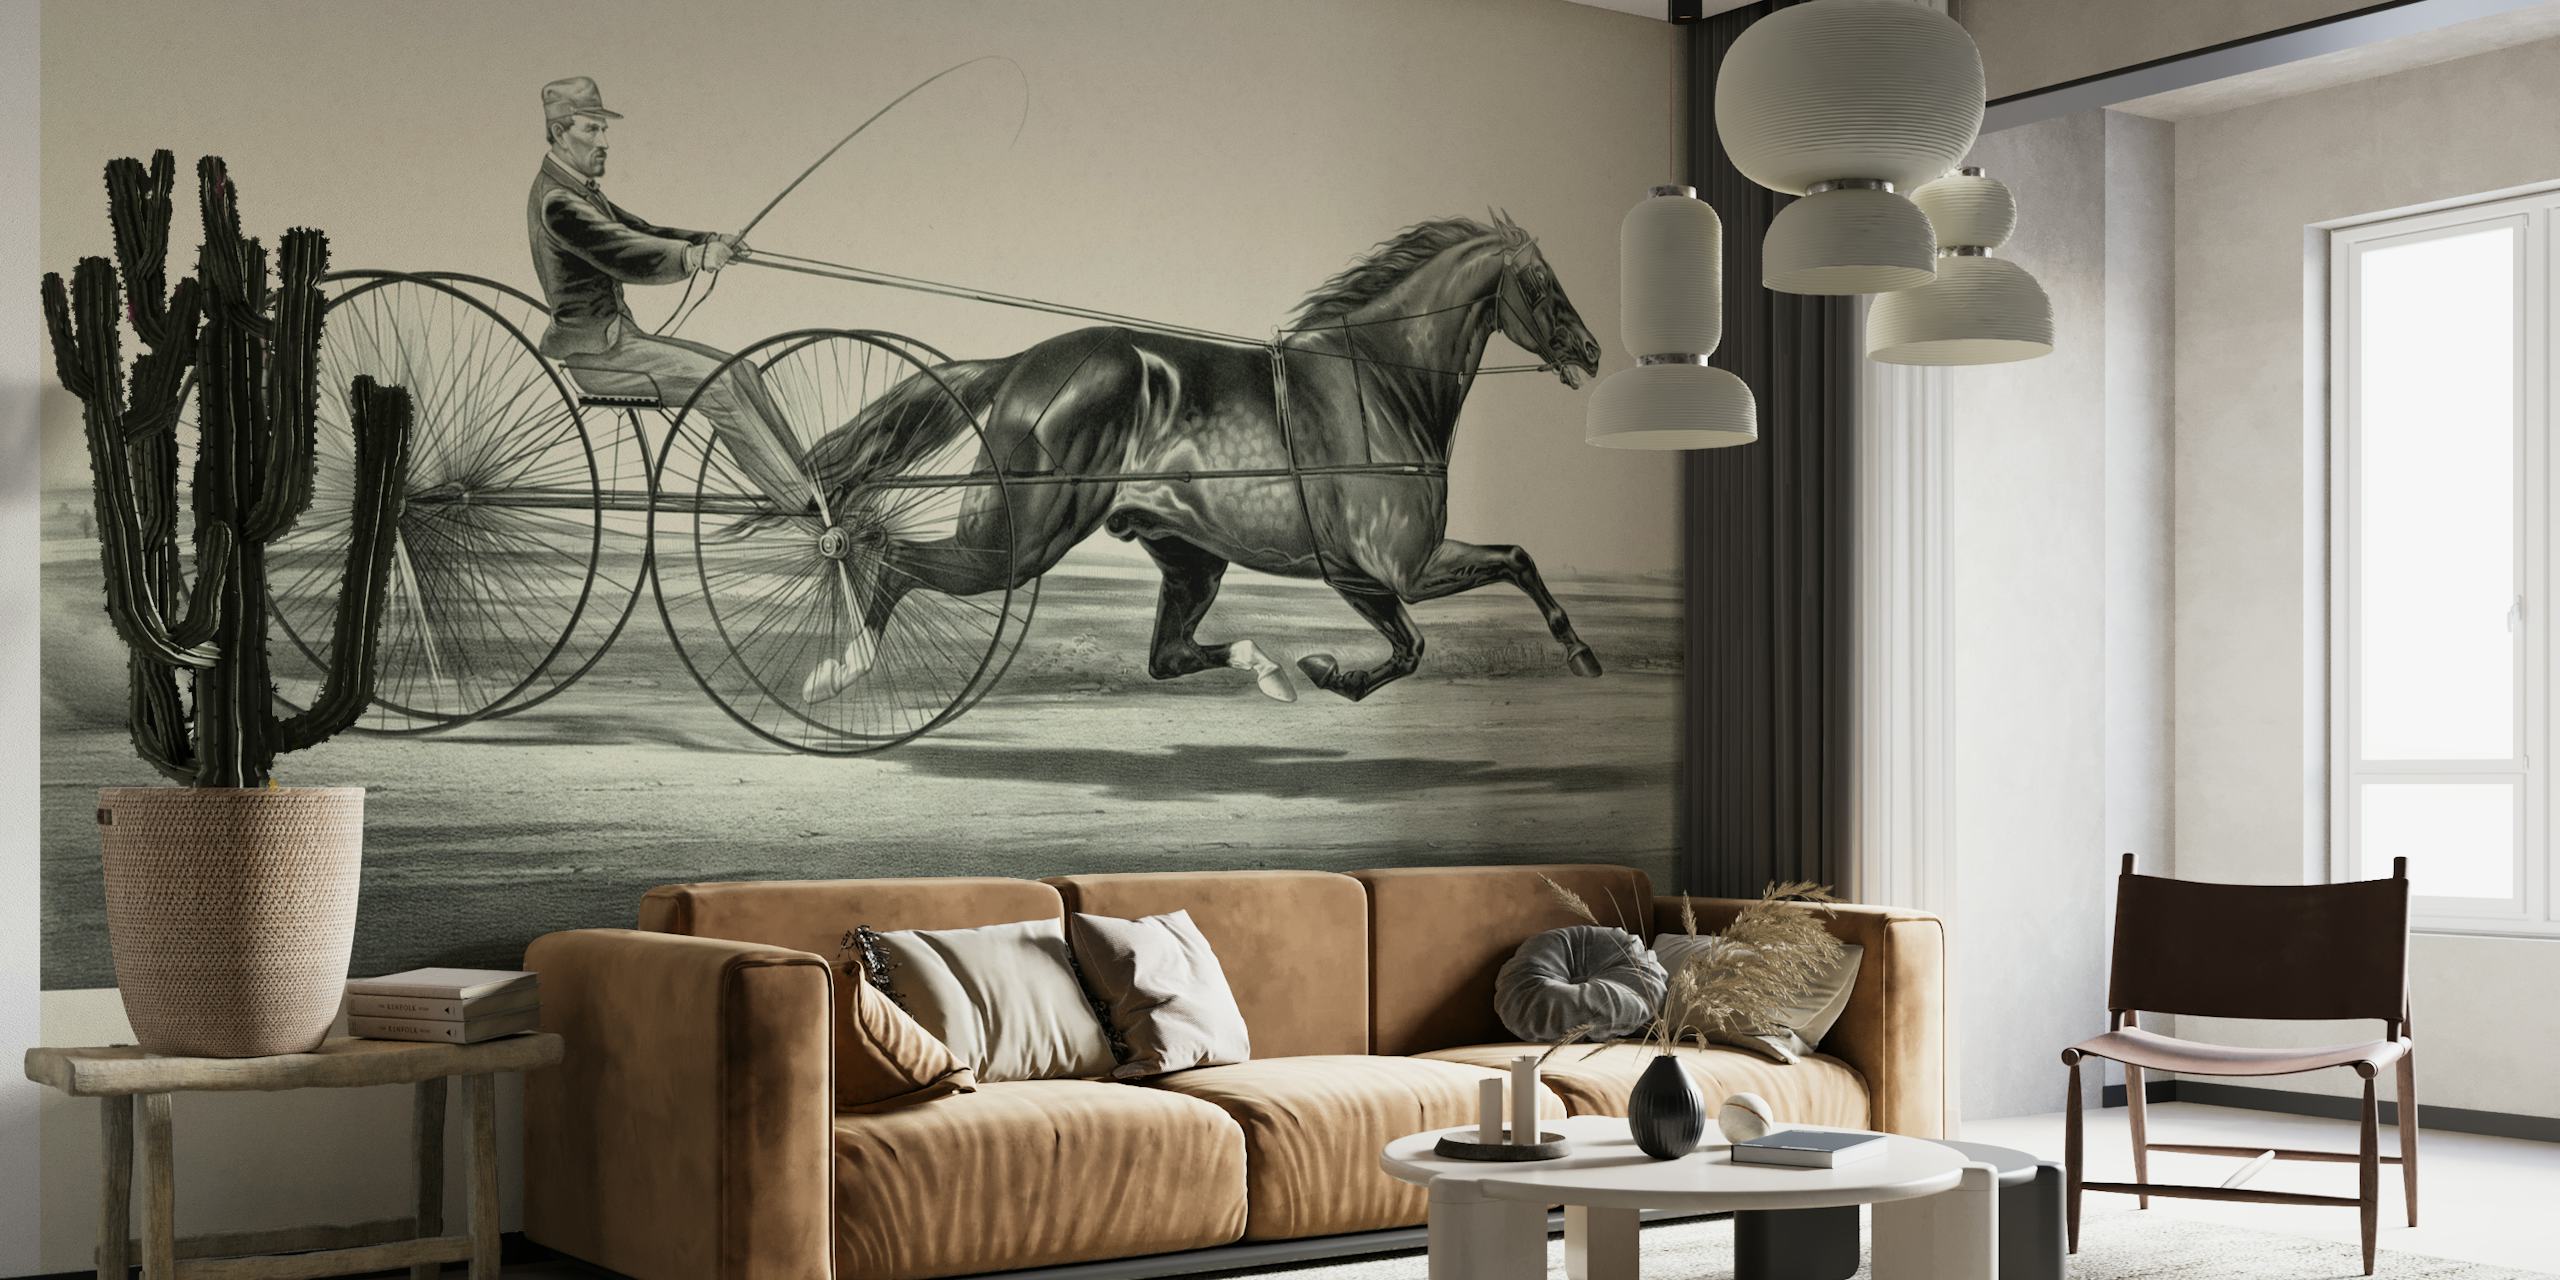 Monokrom historisk hesteveddeløpsveggmaleri som viser en jockey i en hestevogn